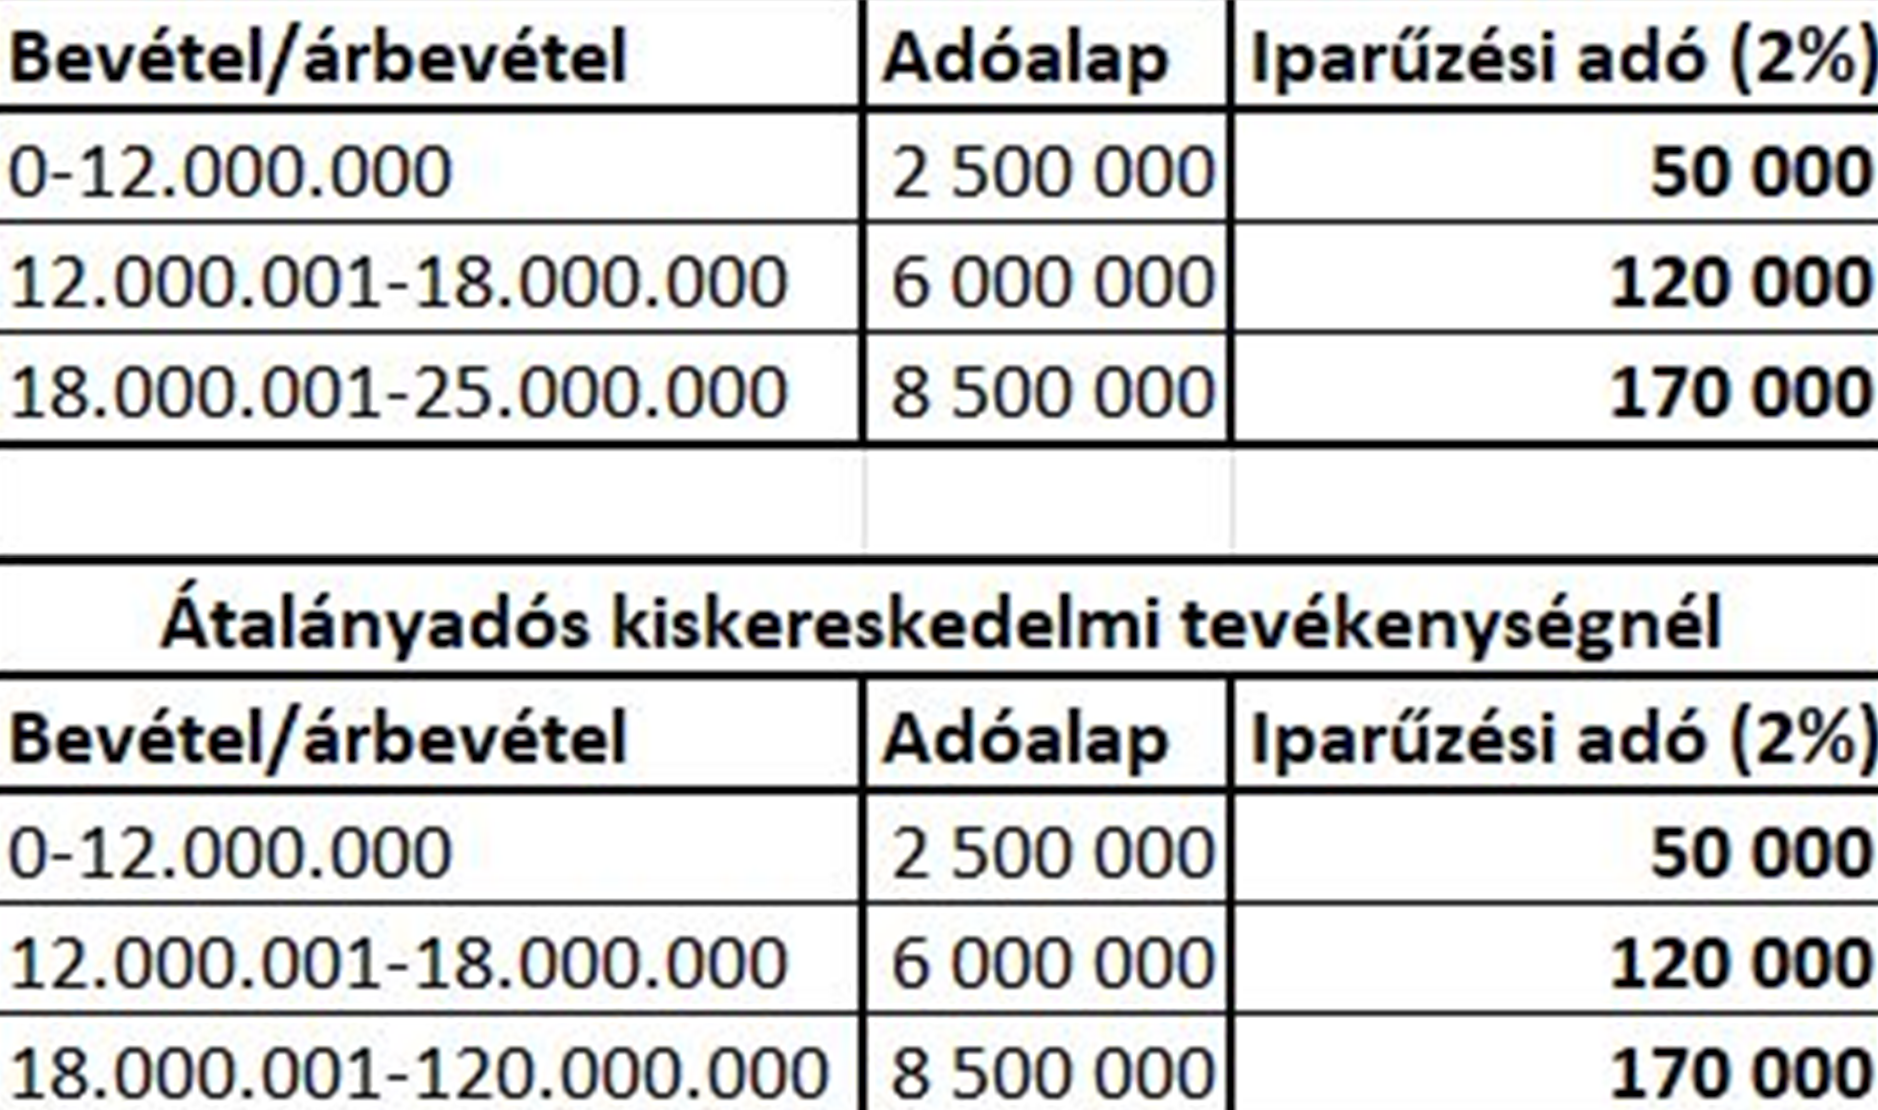 Azt látjuk a táblázatban, hogy ha a bevétel nem éri el a 12 millió forintot, akkor az adóalap 2.500.000 forint, és ha 2%-os az iparűzési adó mértéke, akkor az adó 50.000 forint.